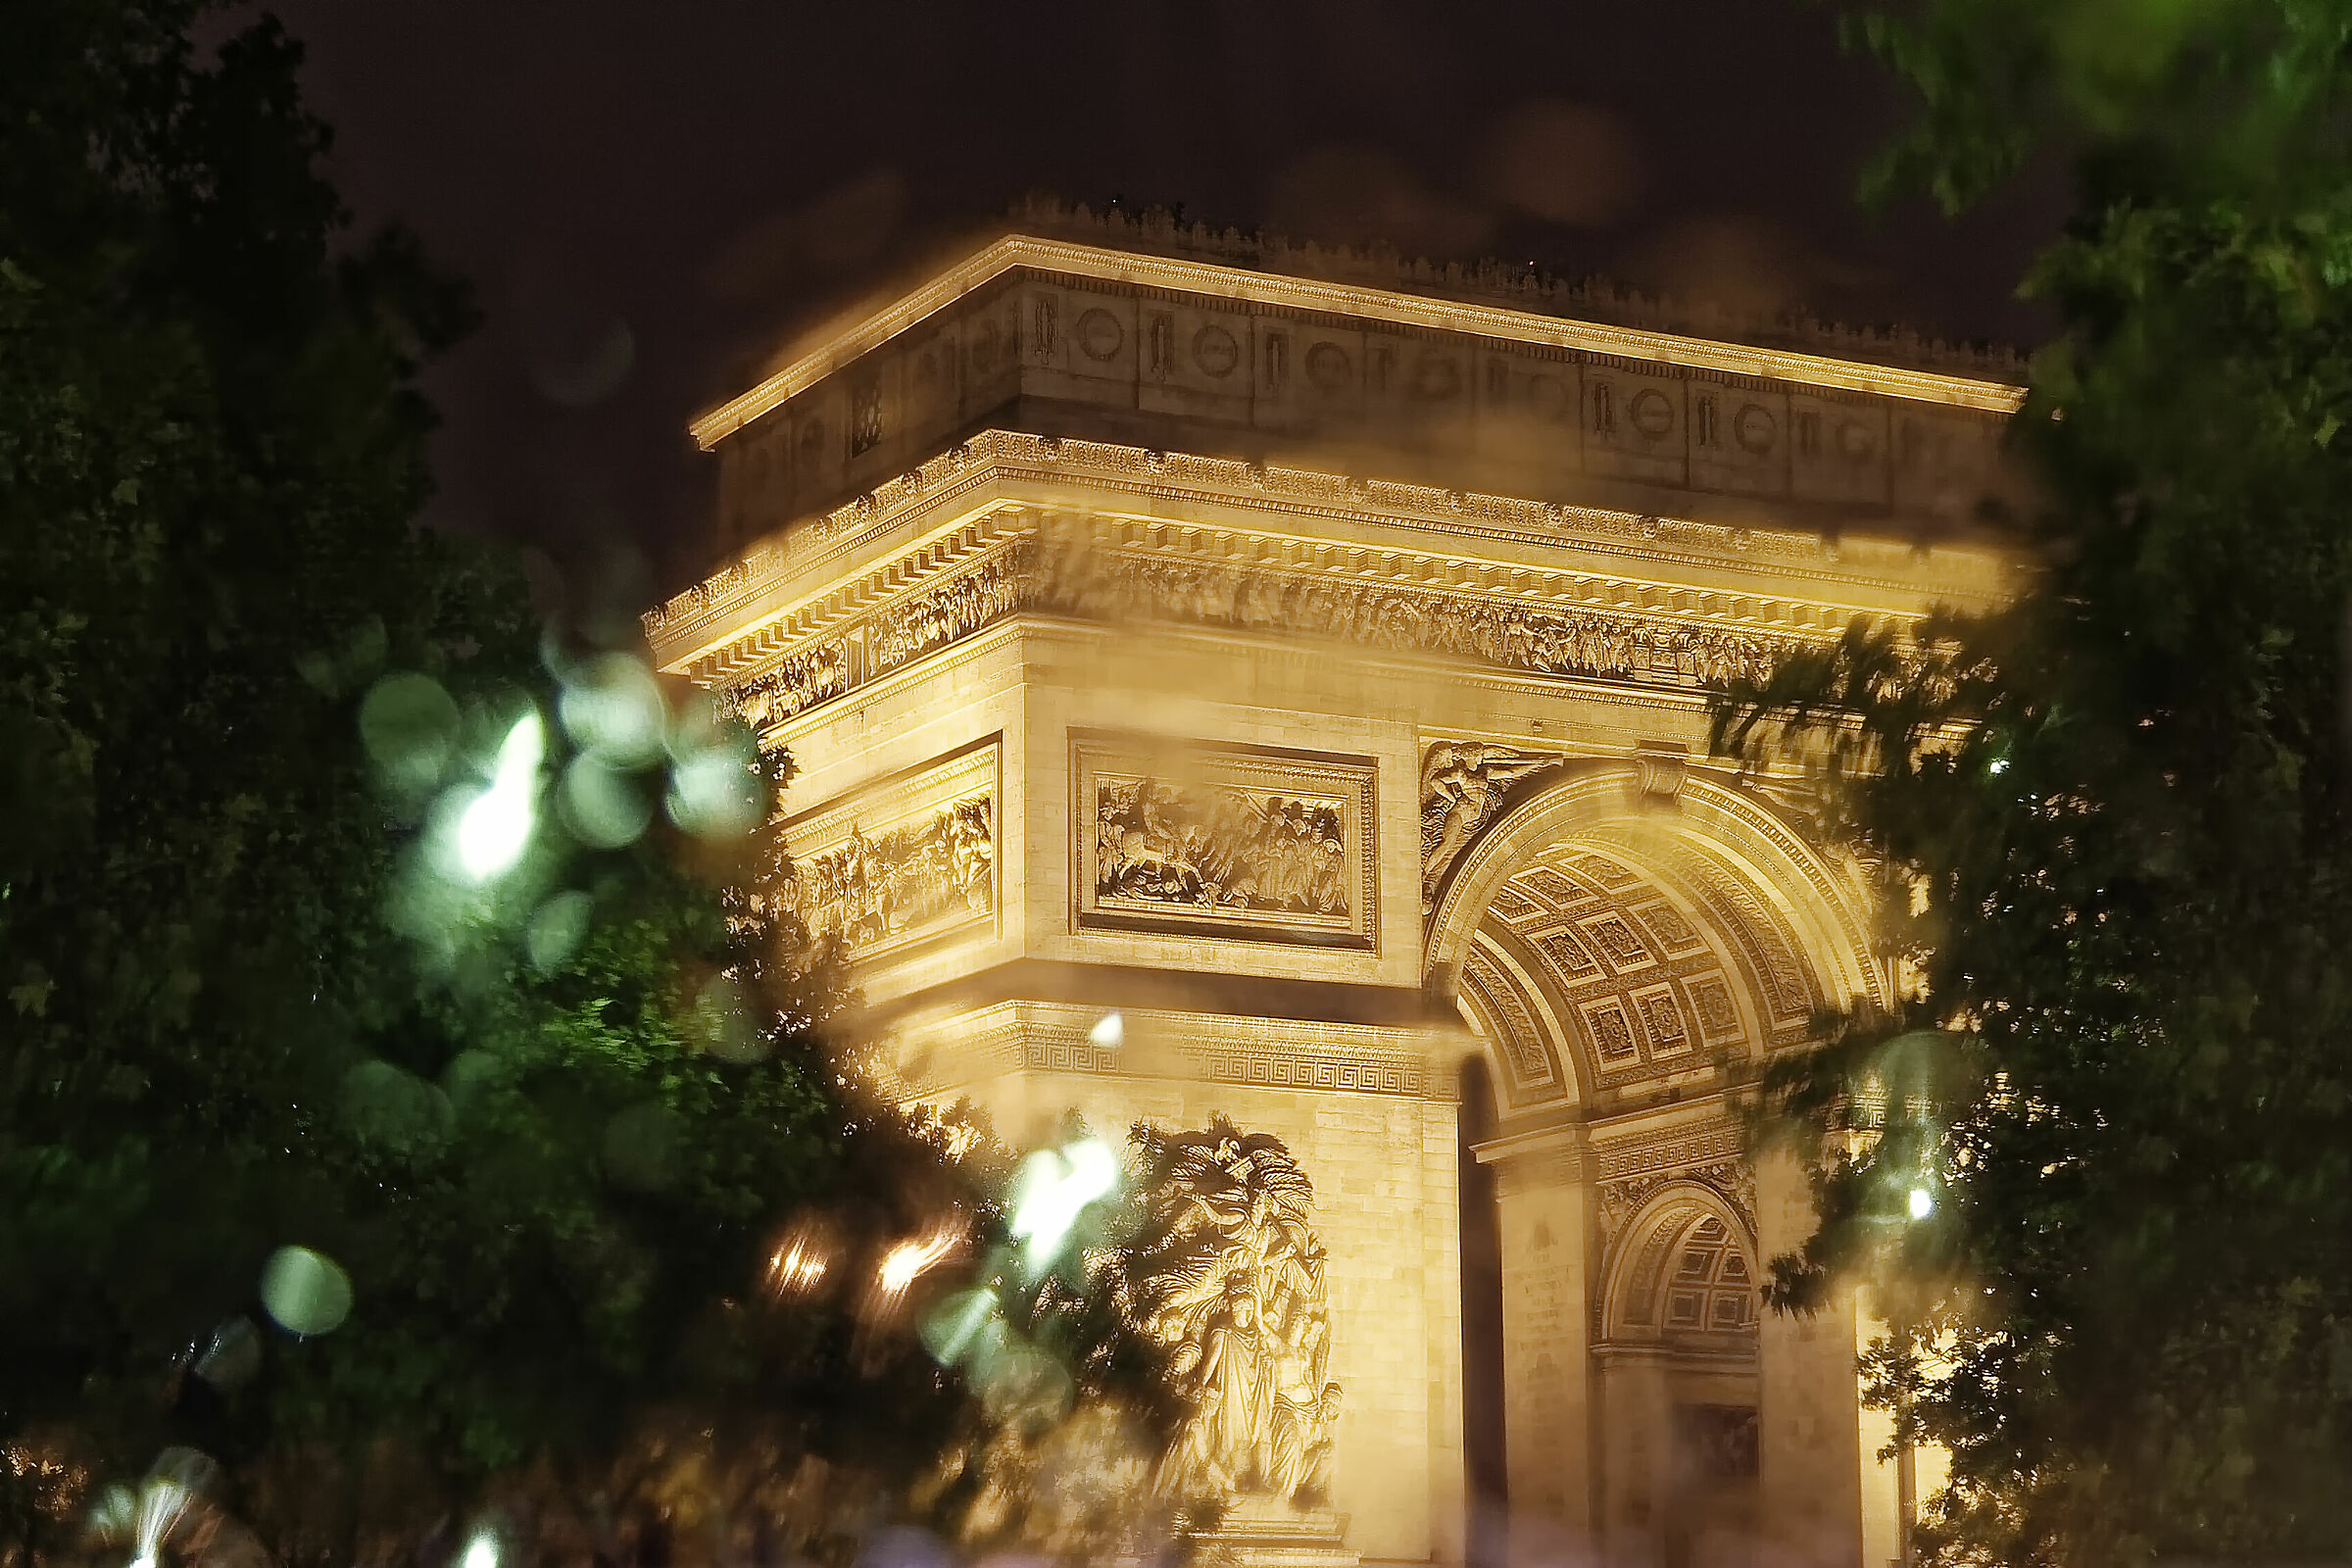 Summer storm in Paris...